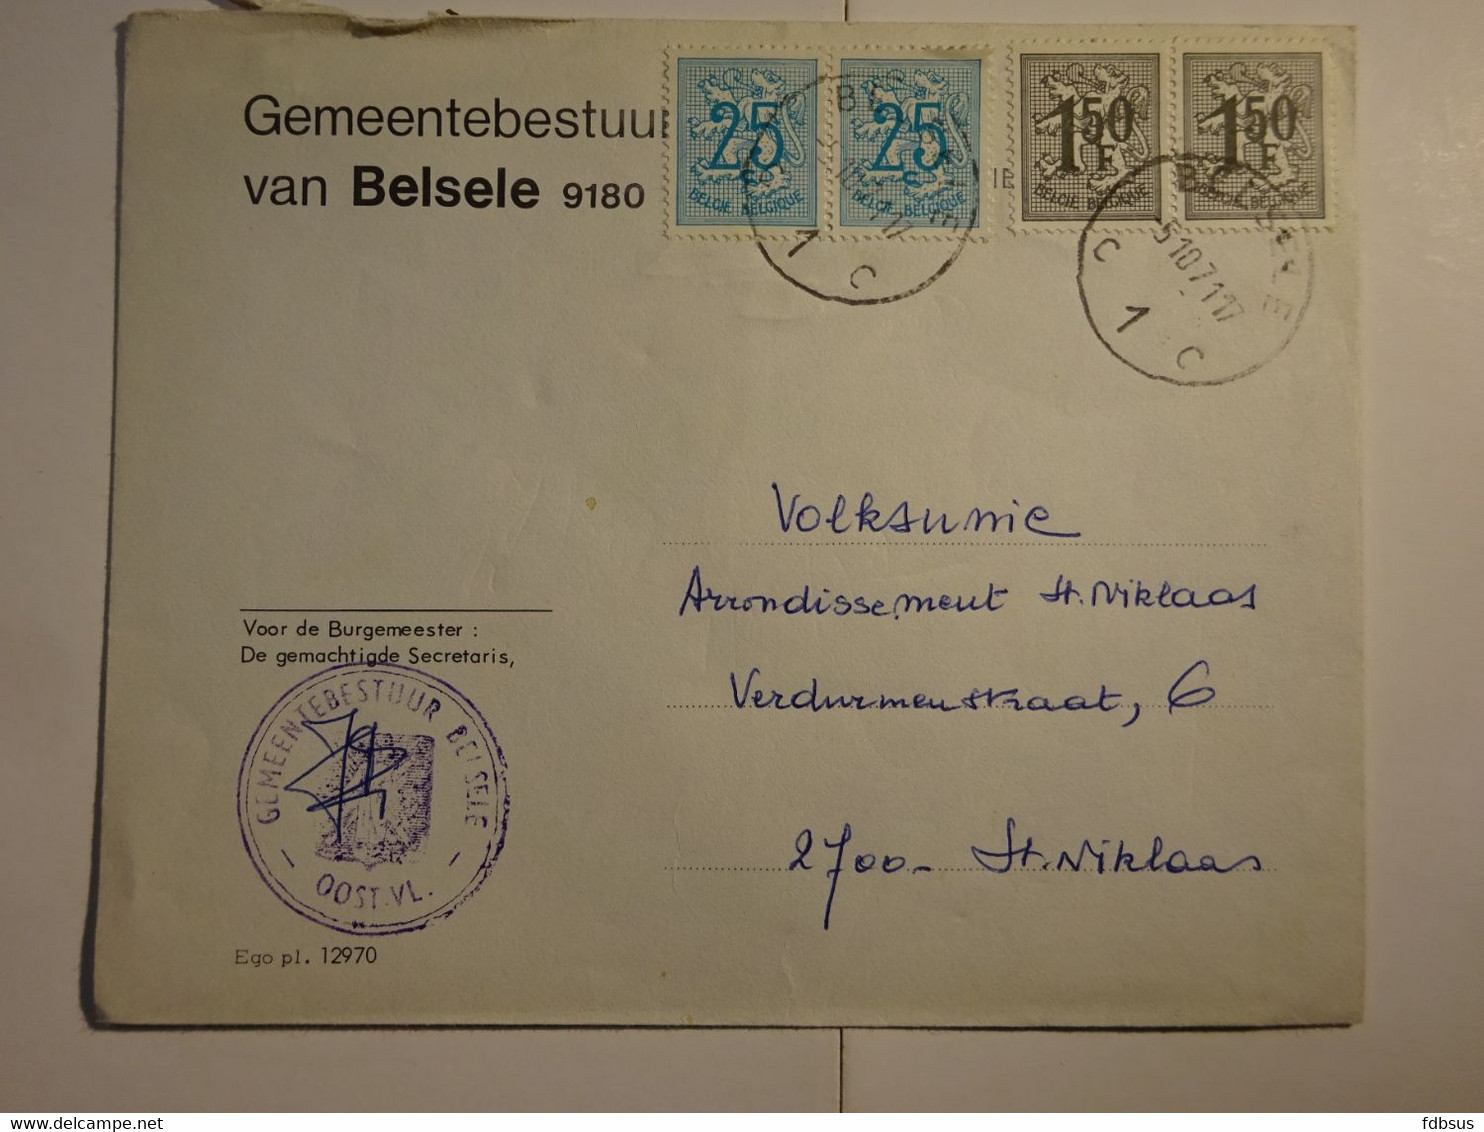 1971 Enveloppe Gemeentebestuur 9180 BELSELE Gefr. 2 X 25c + 2 X 1.50Fr - Zie Scan (s) Voor Zegels, Stempels En Andere - 1977-1985 Cifra Su Leone